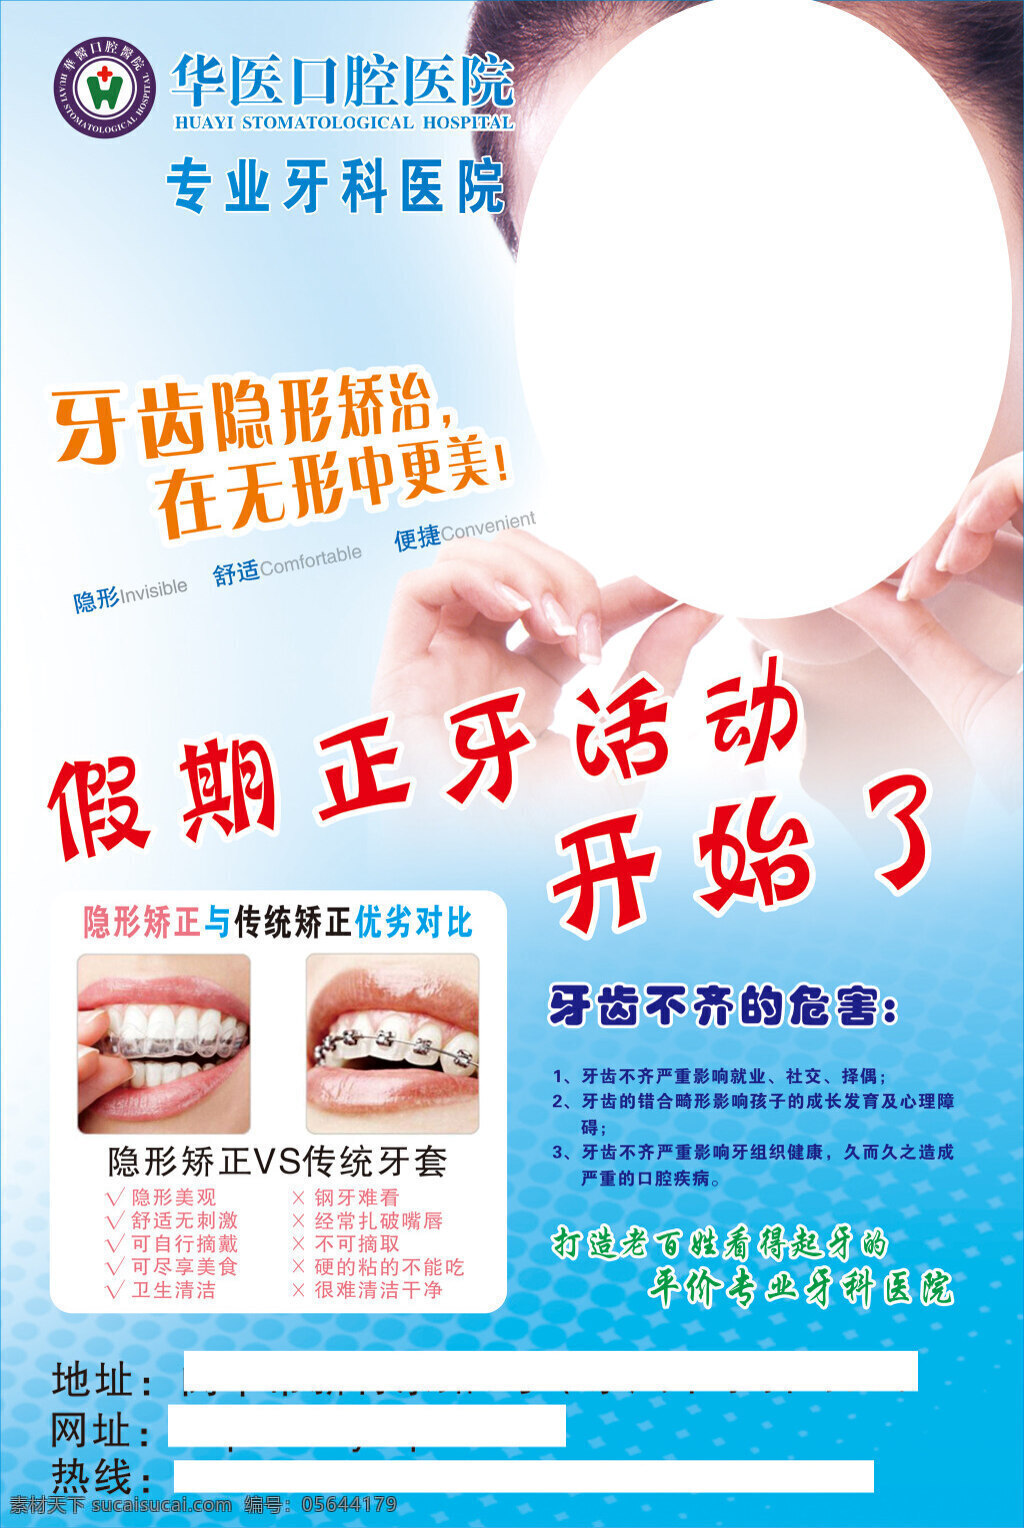 牙科活动海报 促销海报 牙科宣传 隐形矫正 美女图片 人物素材 矢量素材